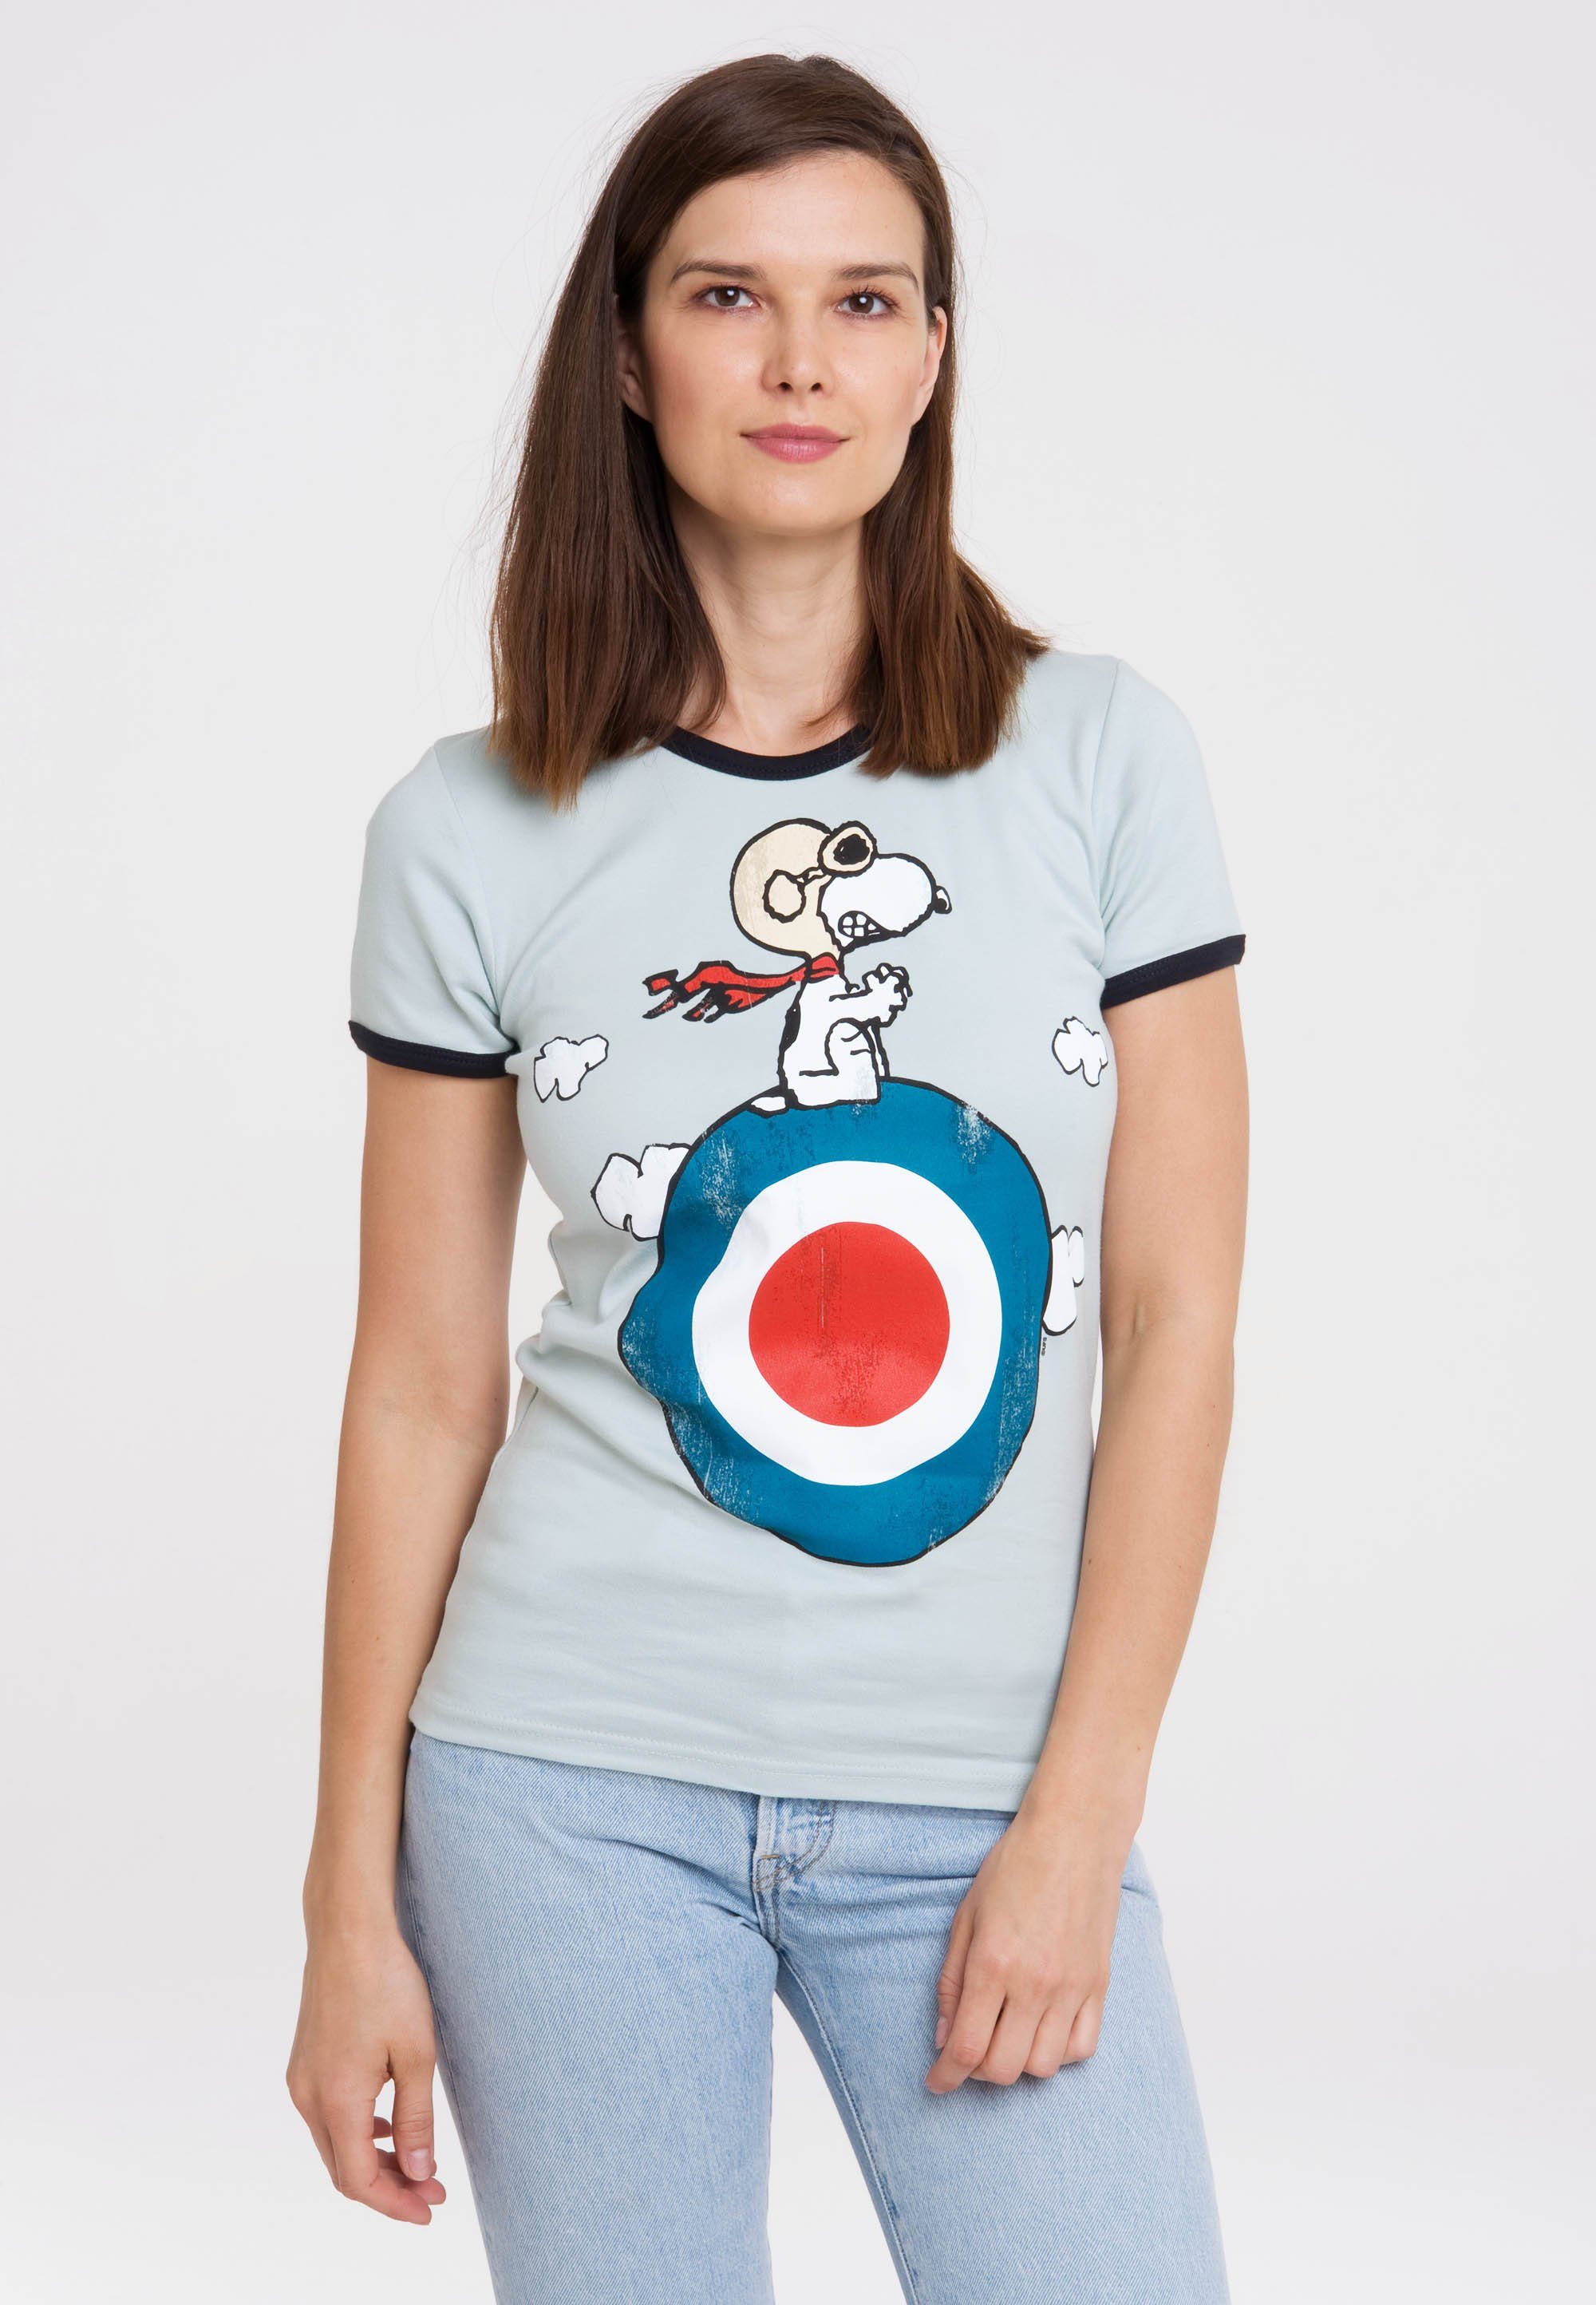 [Wir haben eine große Menge] LOGOSHIRT T-Shirt Peanuts - Snoopy Print mit lizenziertem